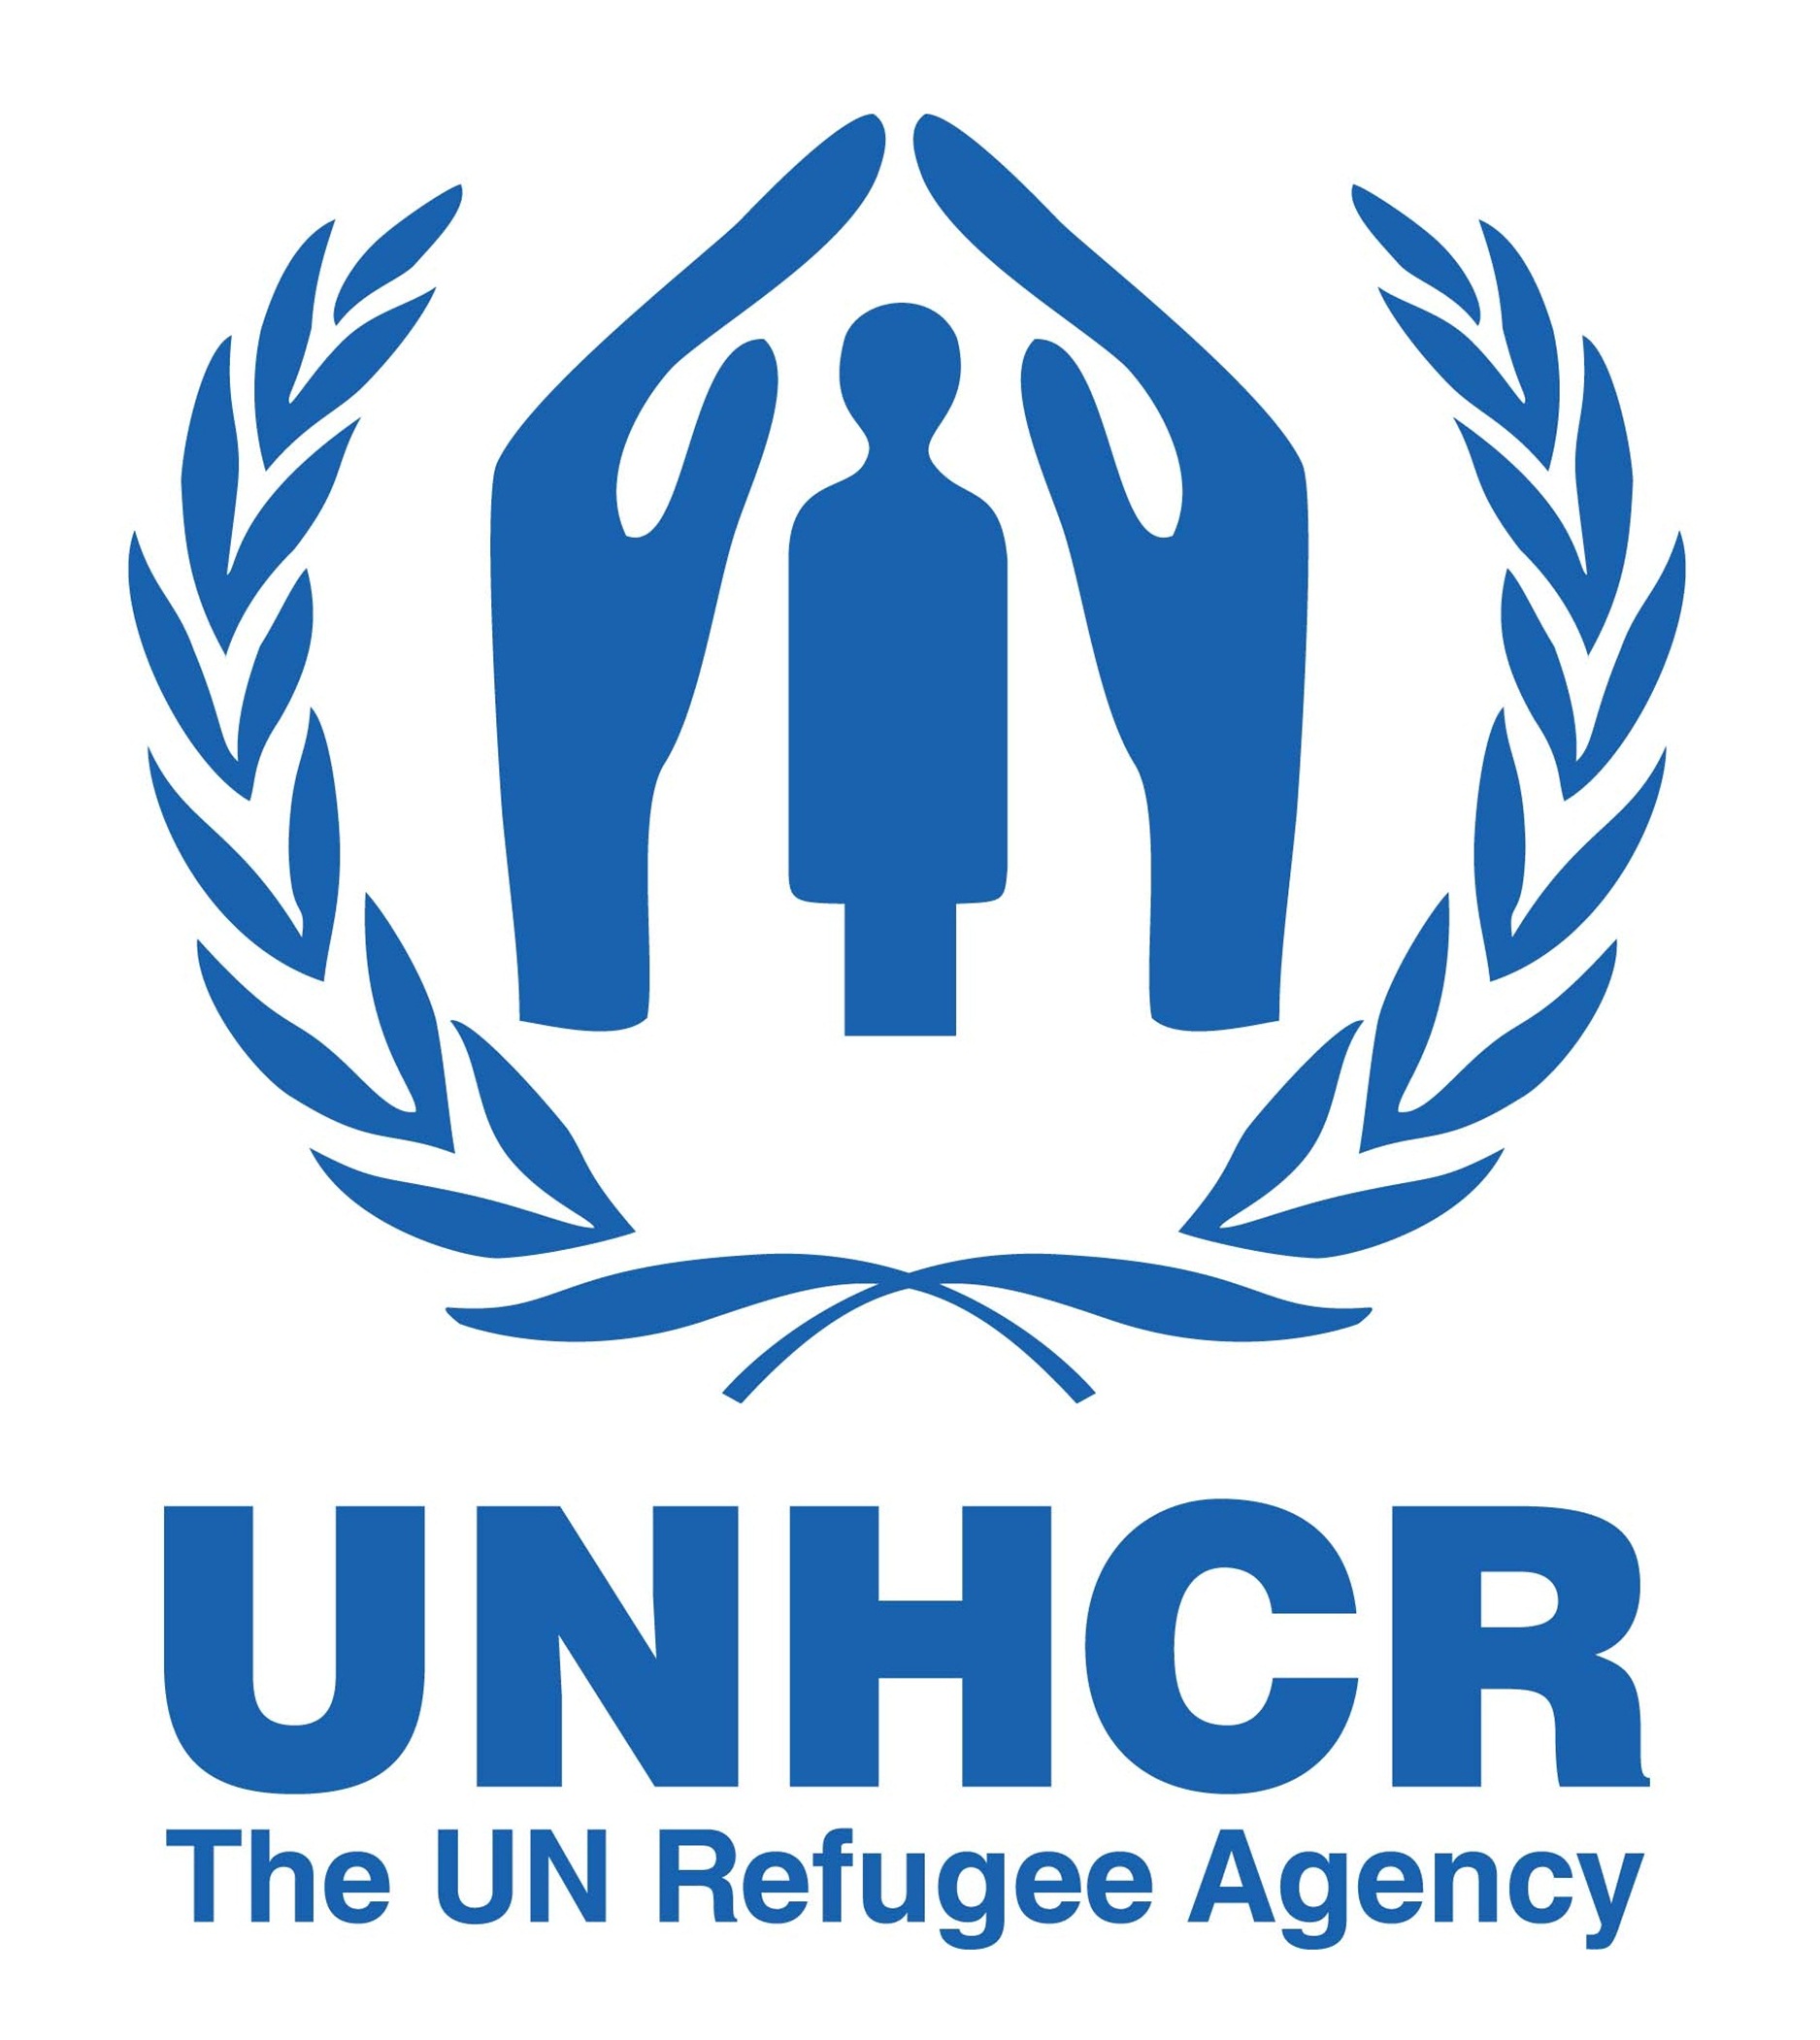 UNHCR Logo